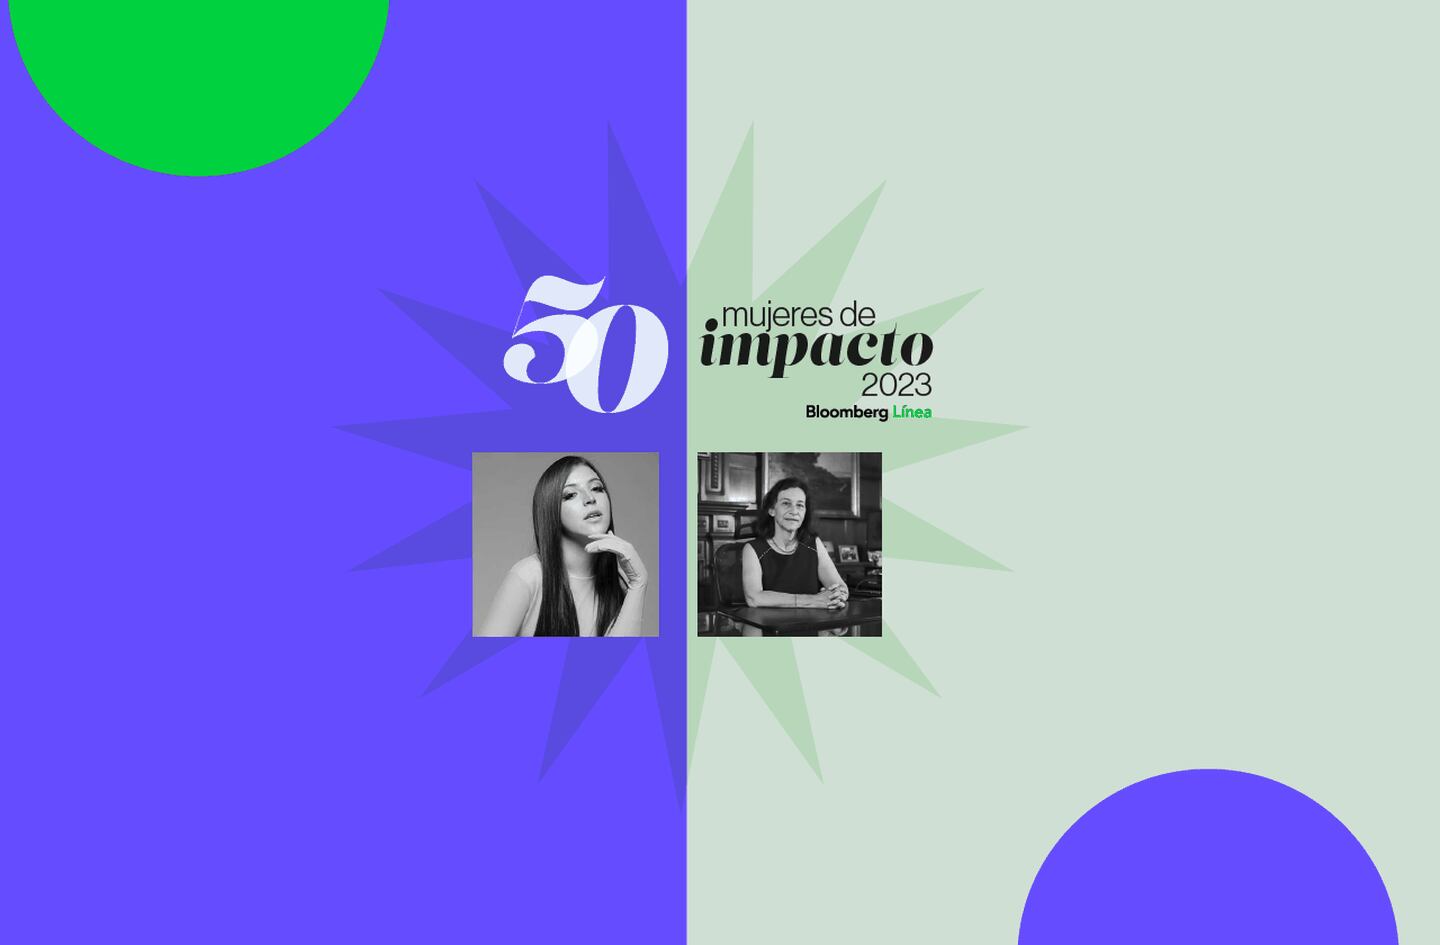 Las chilenas en la lista de Bloomberg Línea de las 50 Mujeres de Impacto de Latinoamérica en 2023. Imagen: Bloomberg Línea